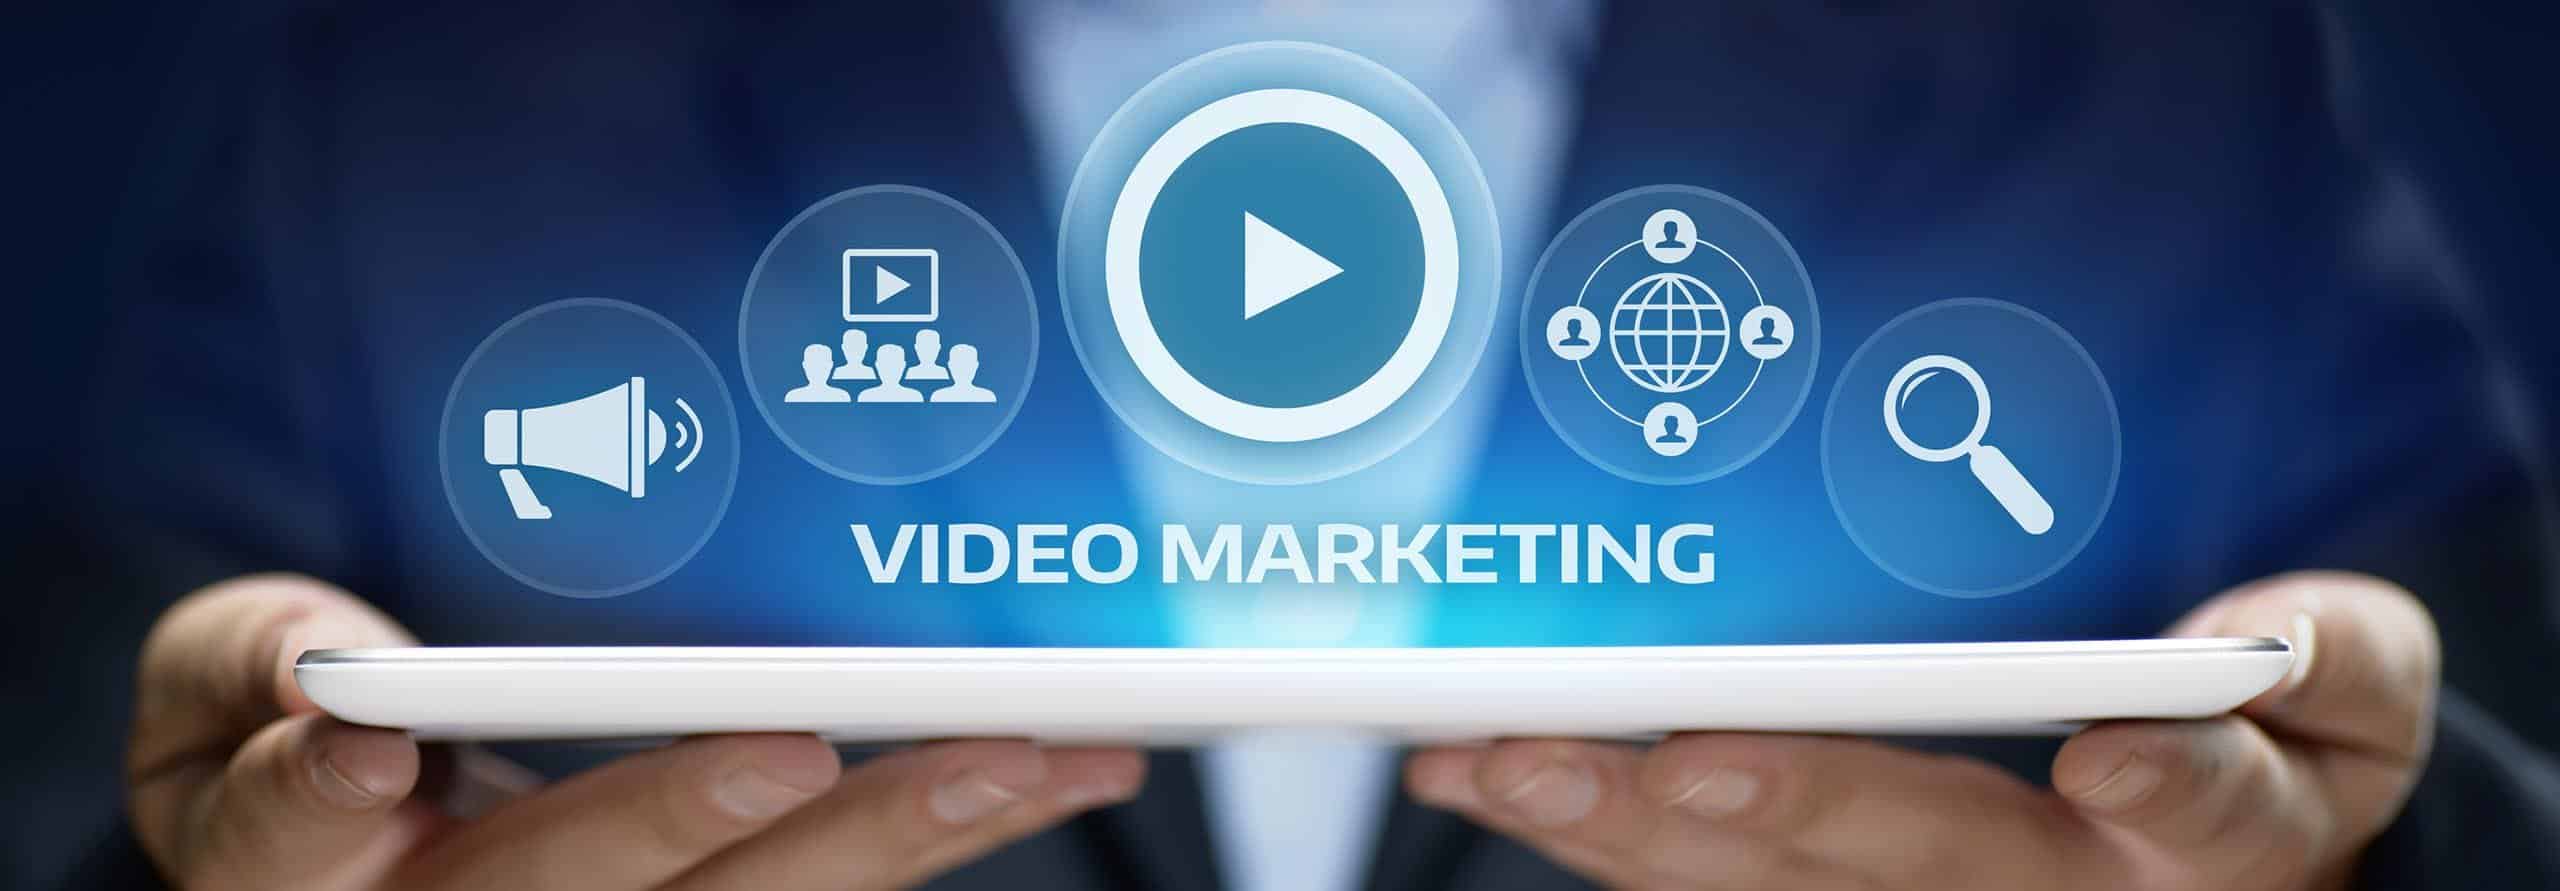 Blog om video marketing | SIGNA